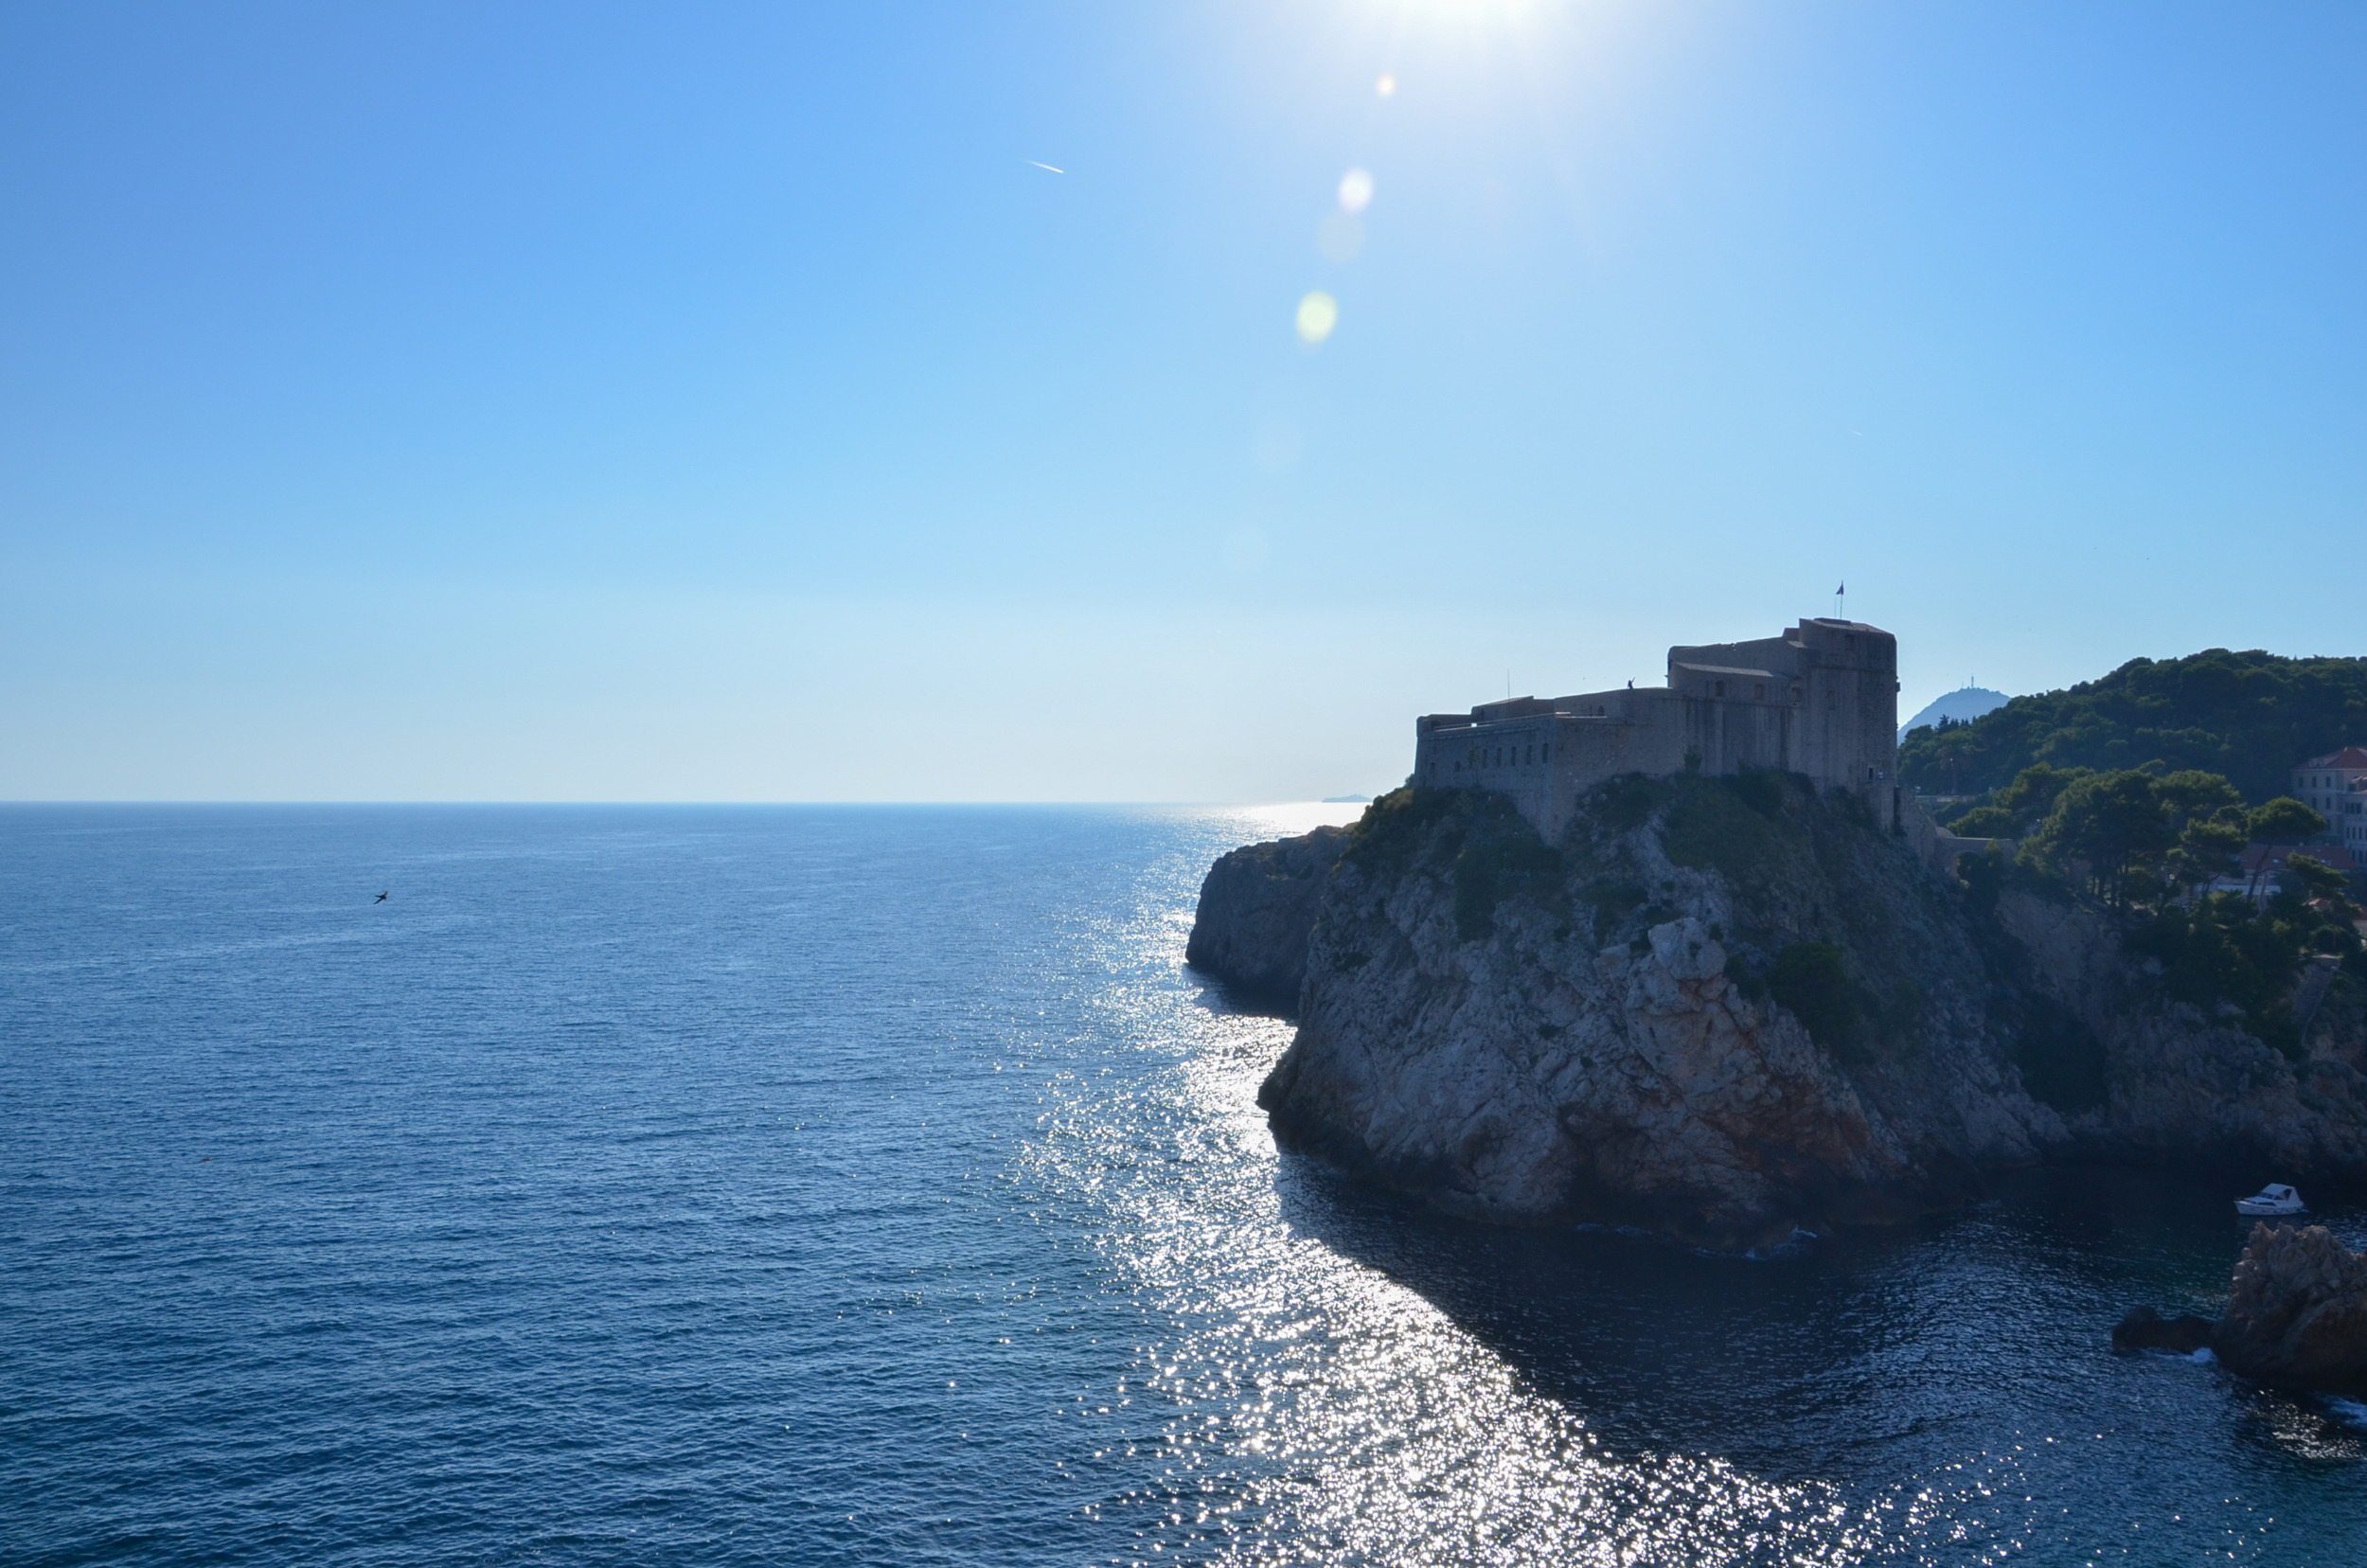 Ein Trip zur Festung Lovrijenac ist ein toller Ausflug von Dubrovnik aus